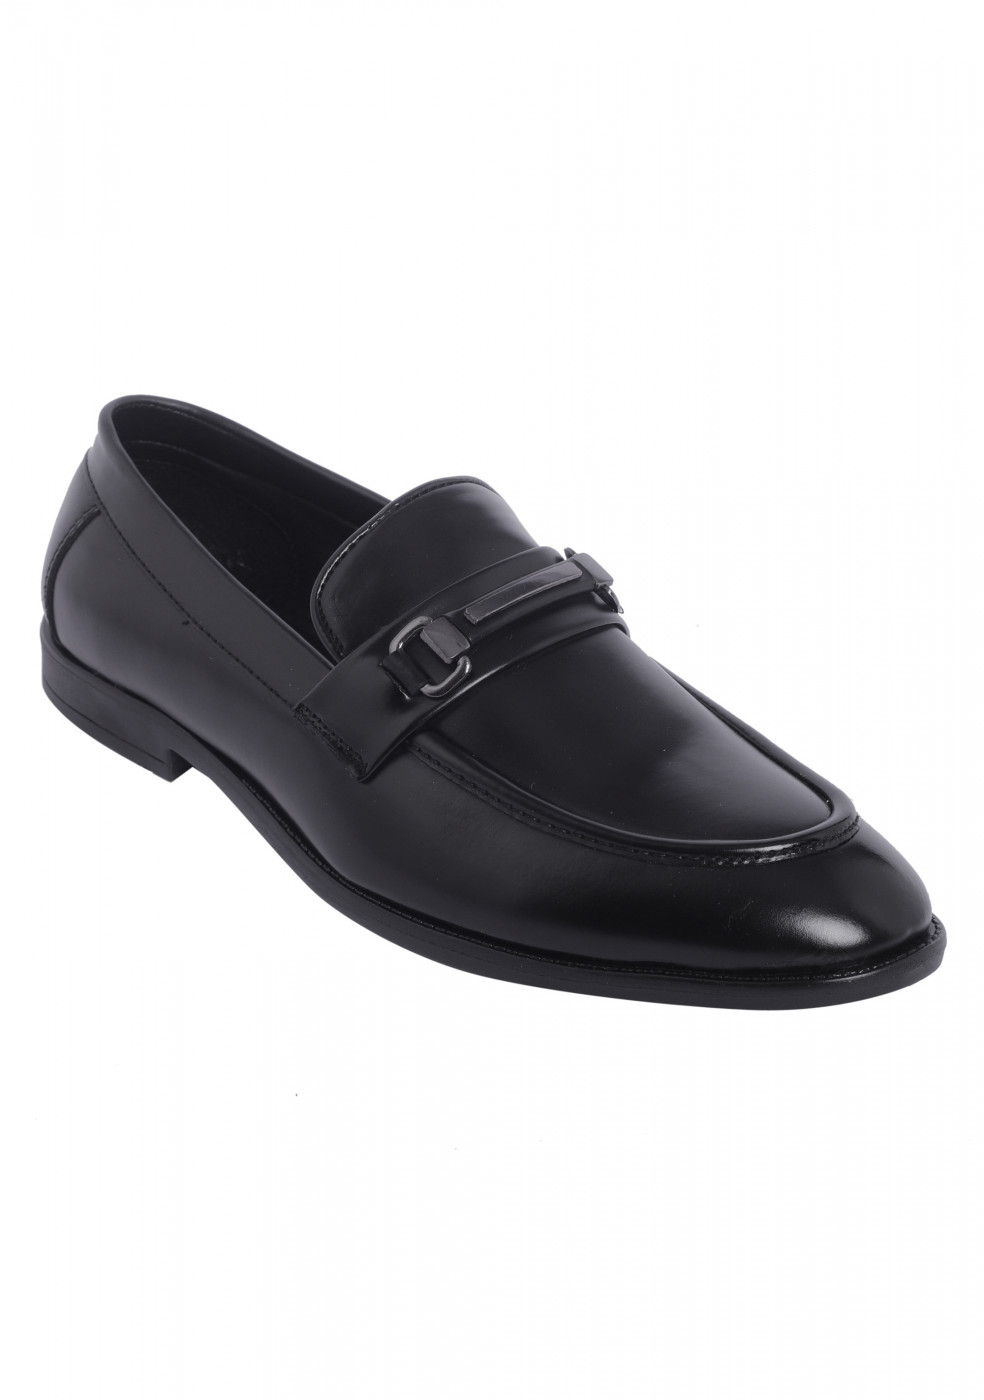 XSTOM Stylish Formal Black Color Shoes For Men